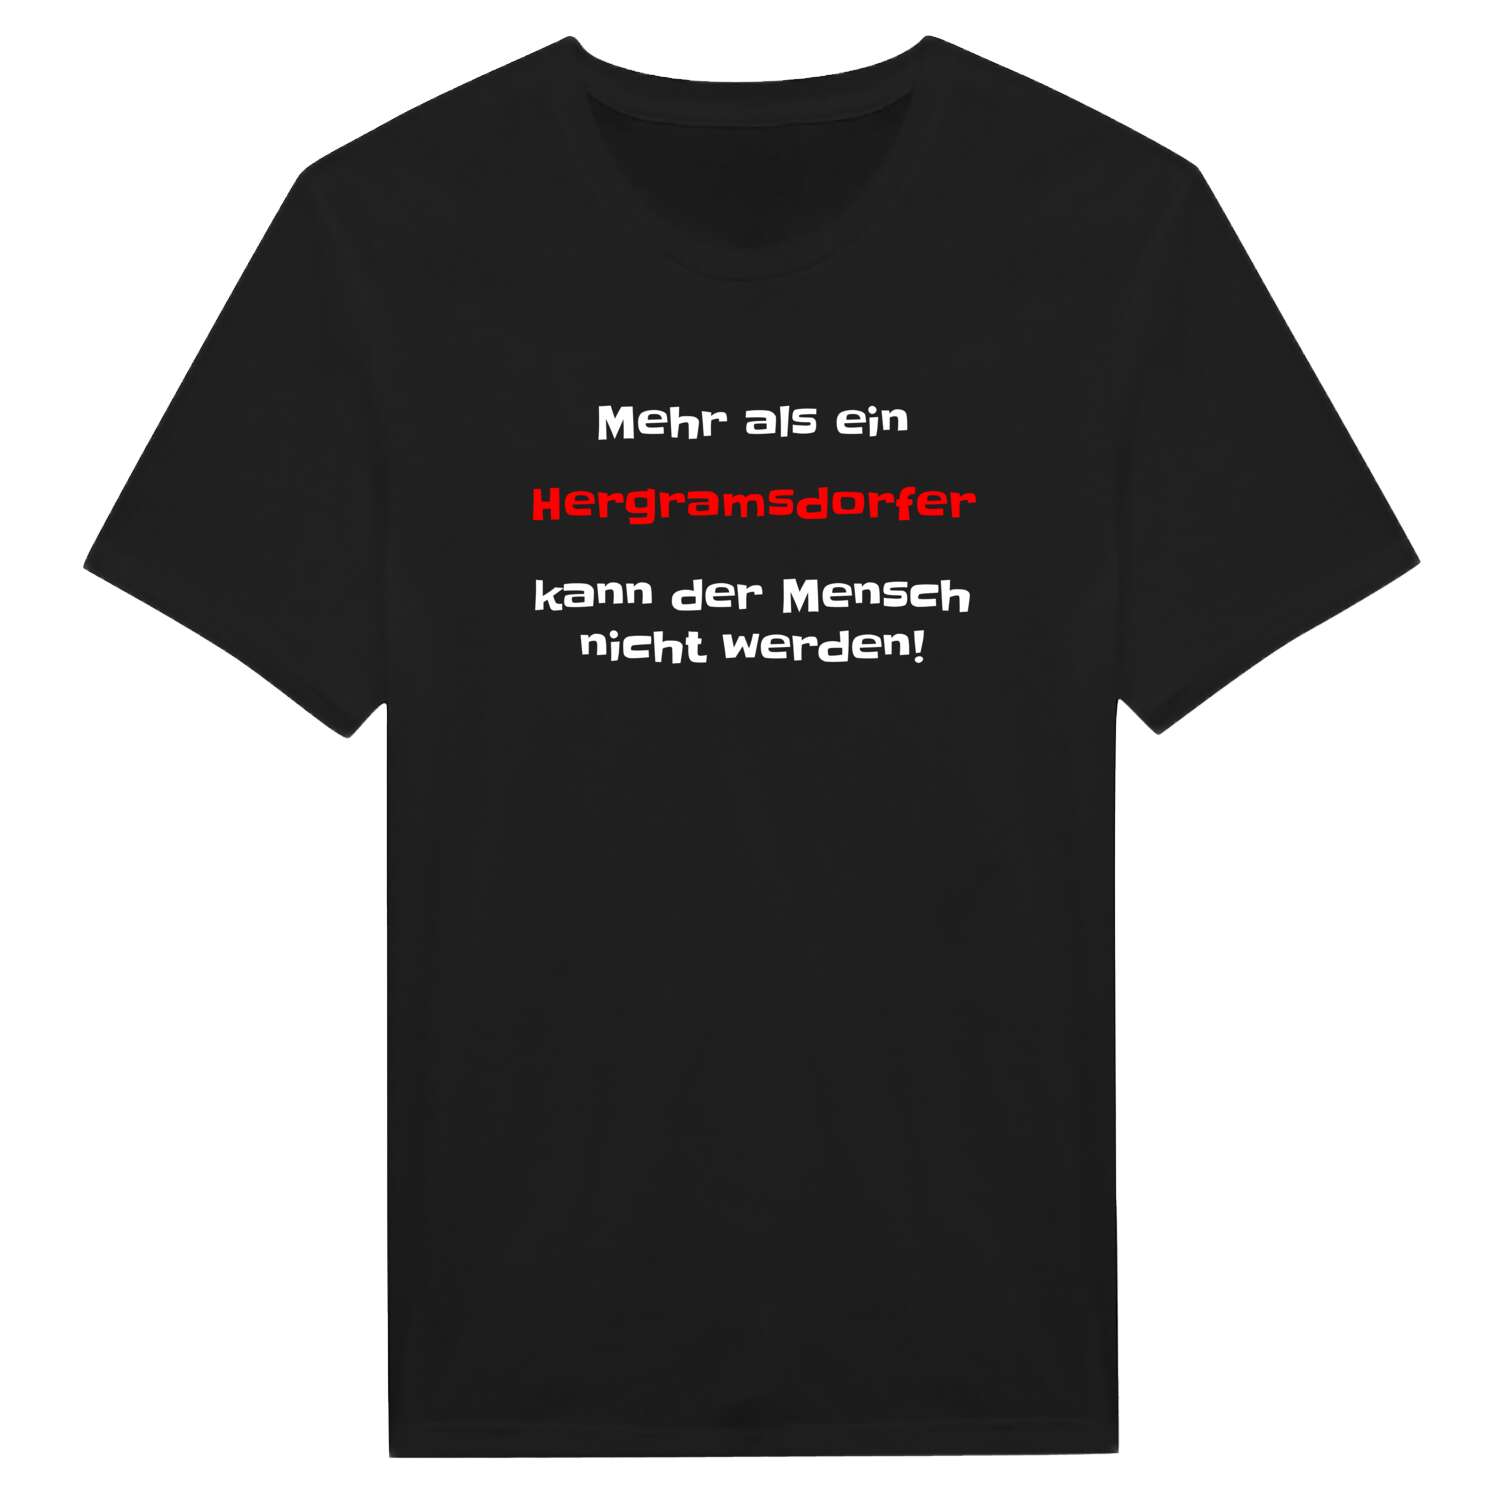 Hergramsdorf T-Shirt »Mehr als ein«